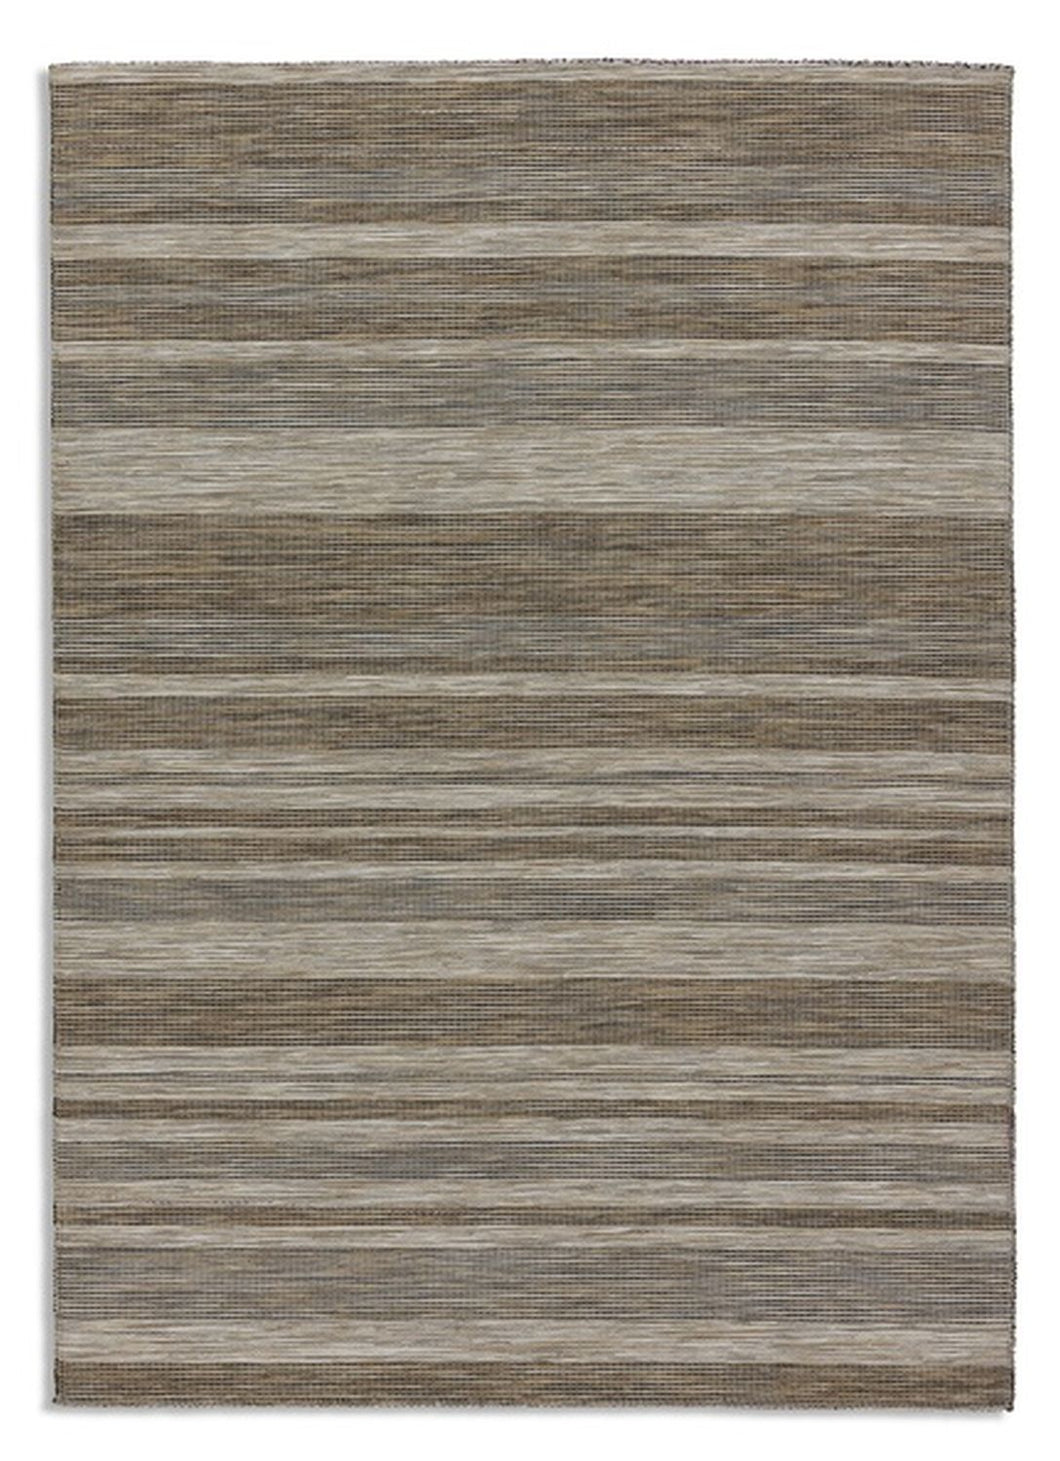 Amalfi – 6687 201 060 – Streifen braun – Teppich Flachgewebe, dezente Farbtöne – auch Outdoor geeignet - 2 Designs,  4 Größen